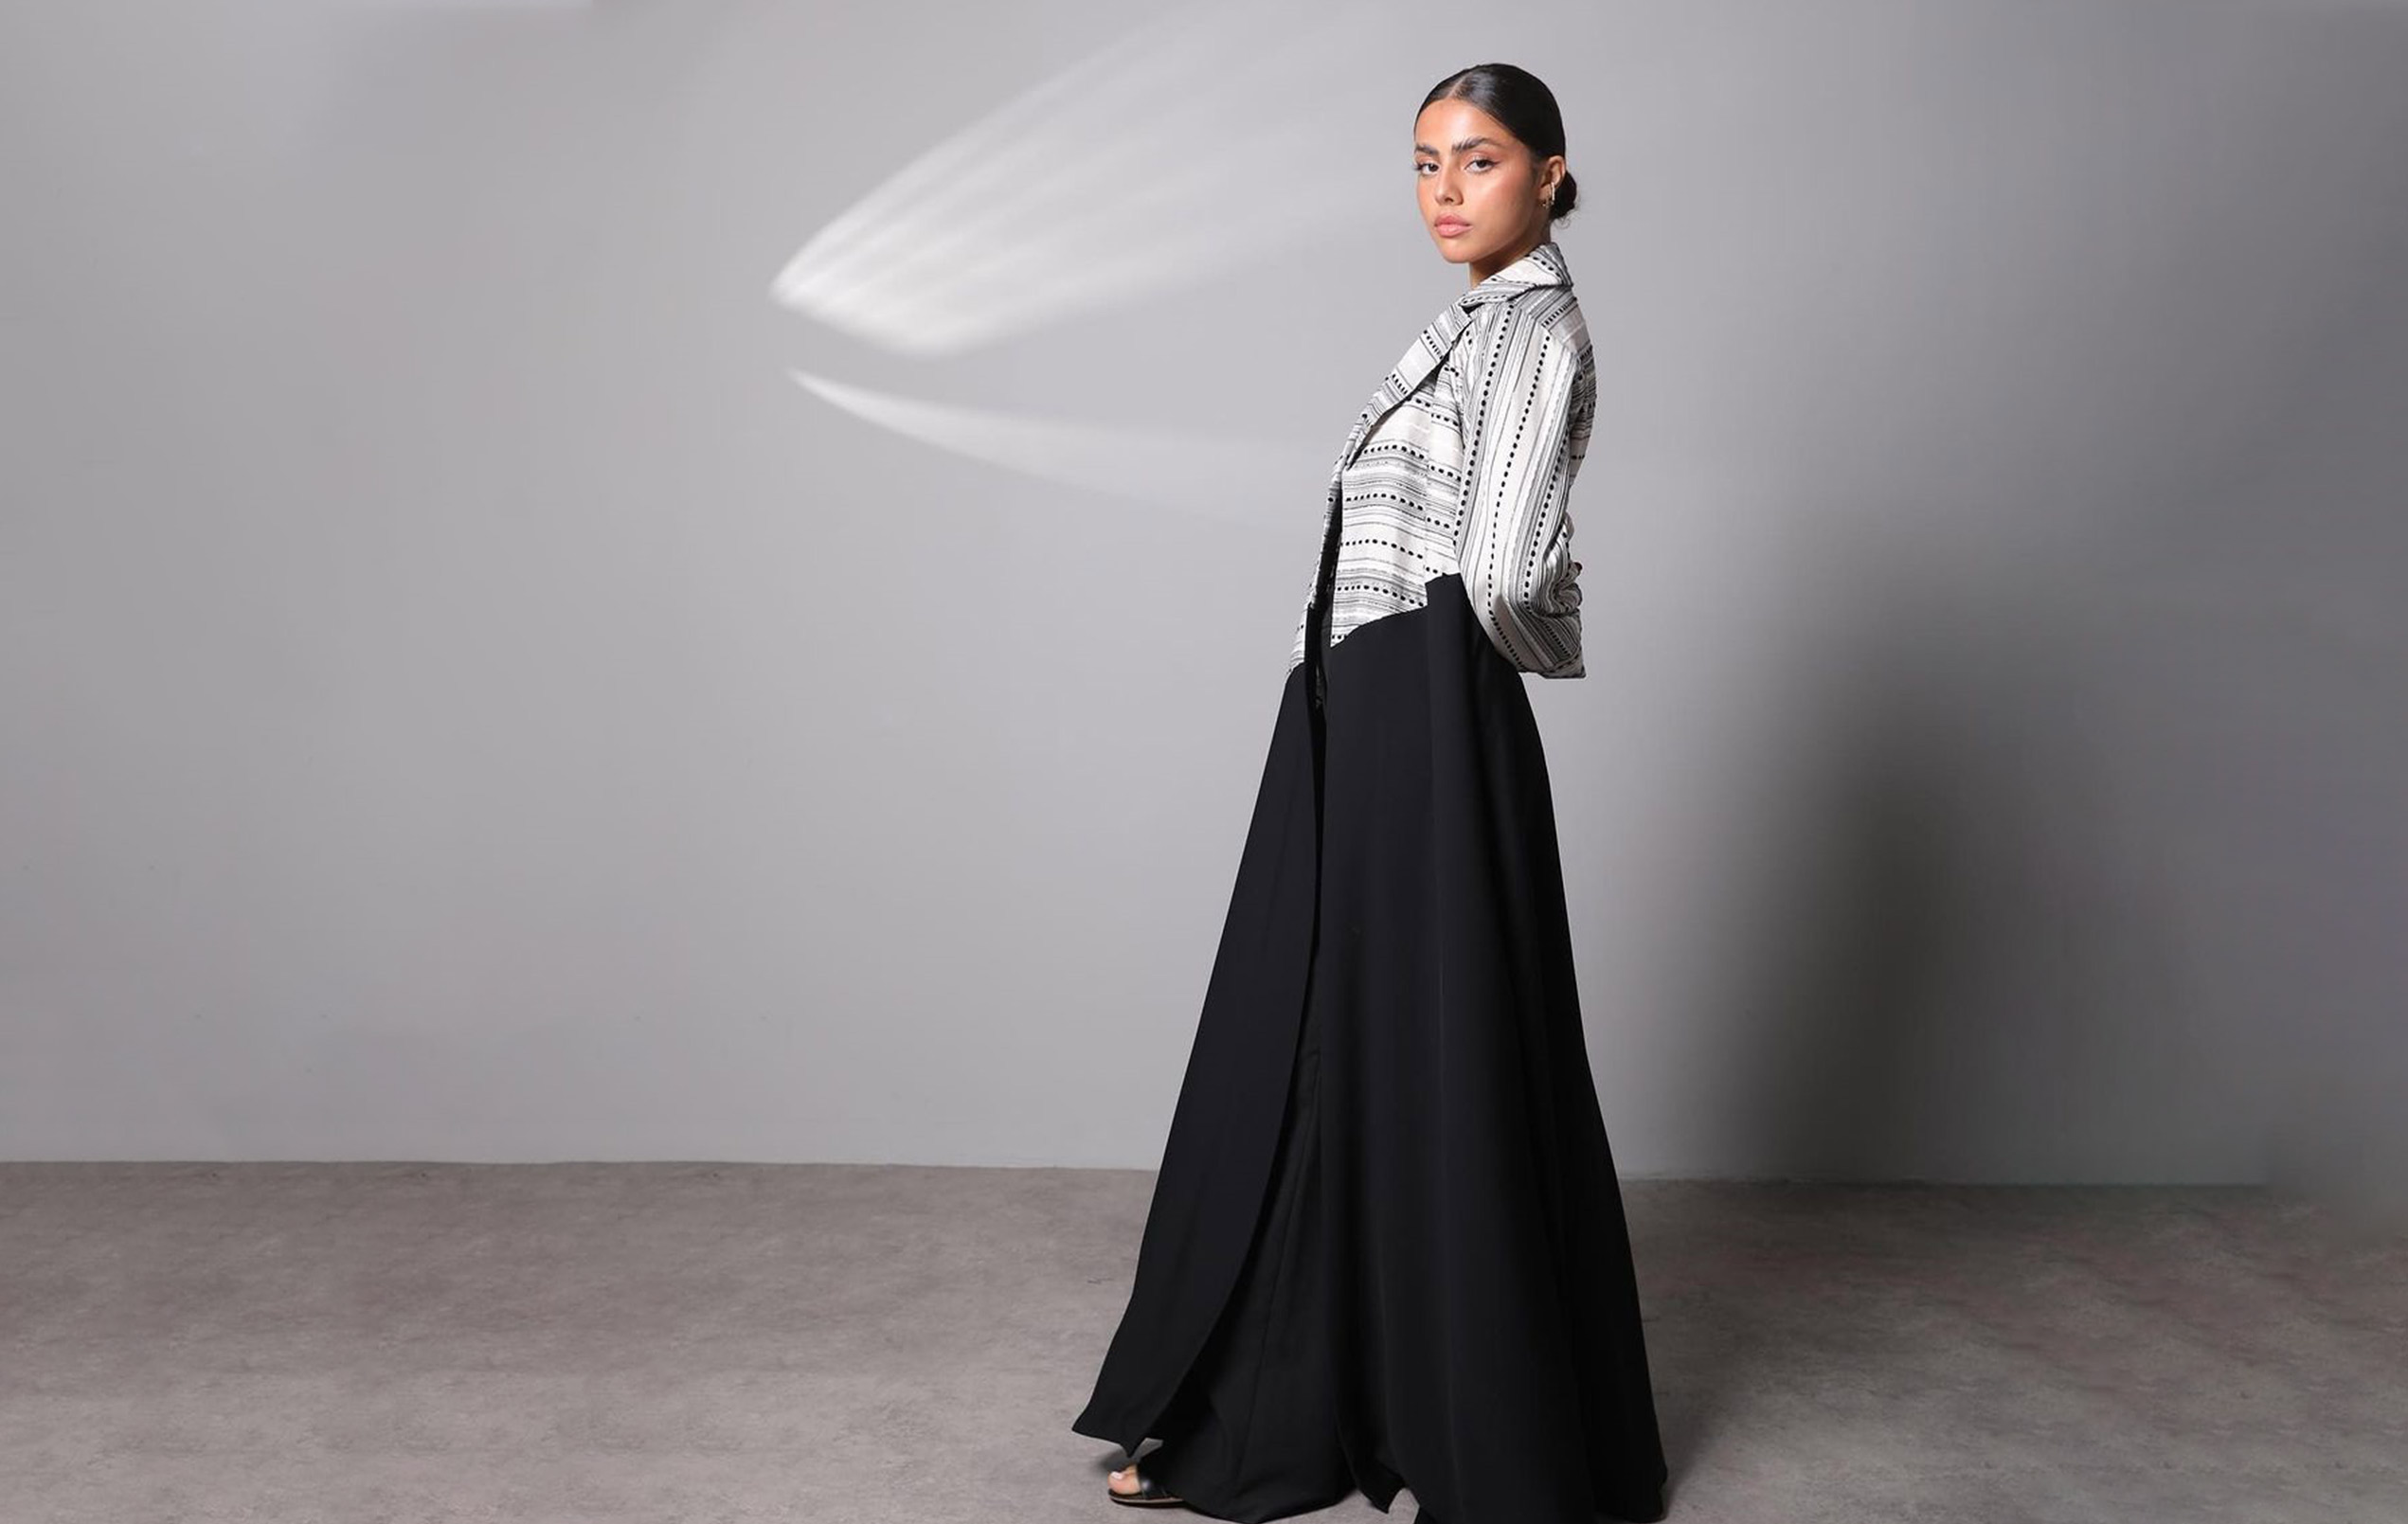 Amber-line-qatari-abaya-fashion-slide02